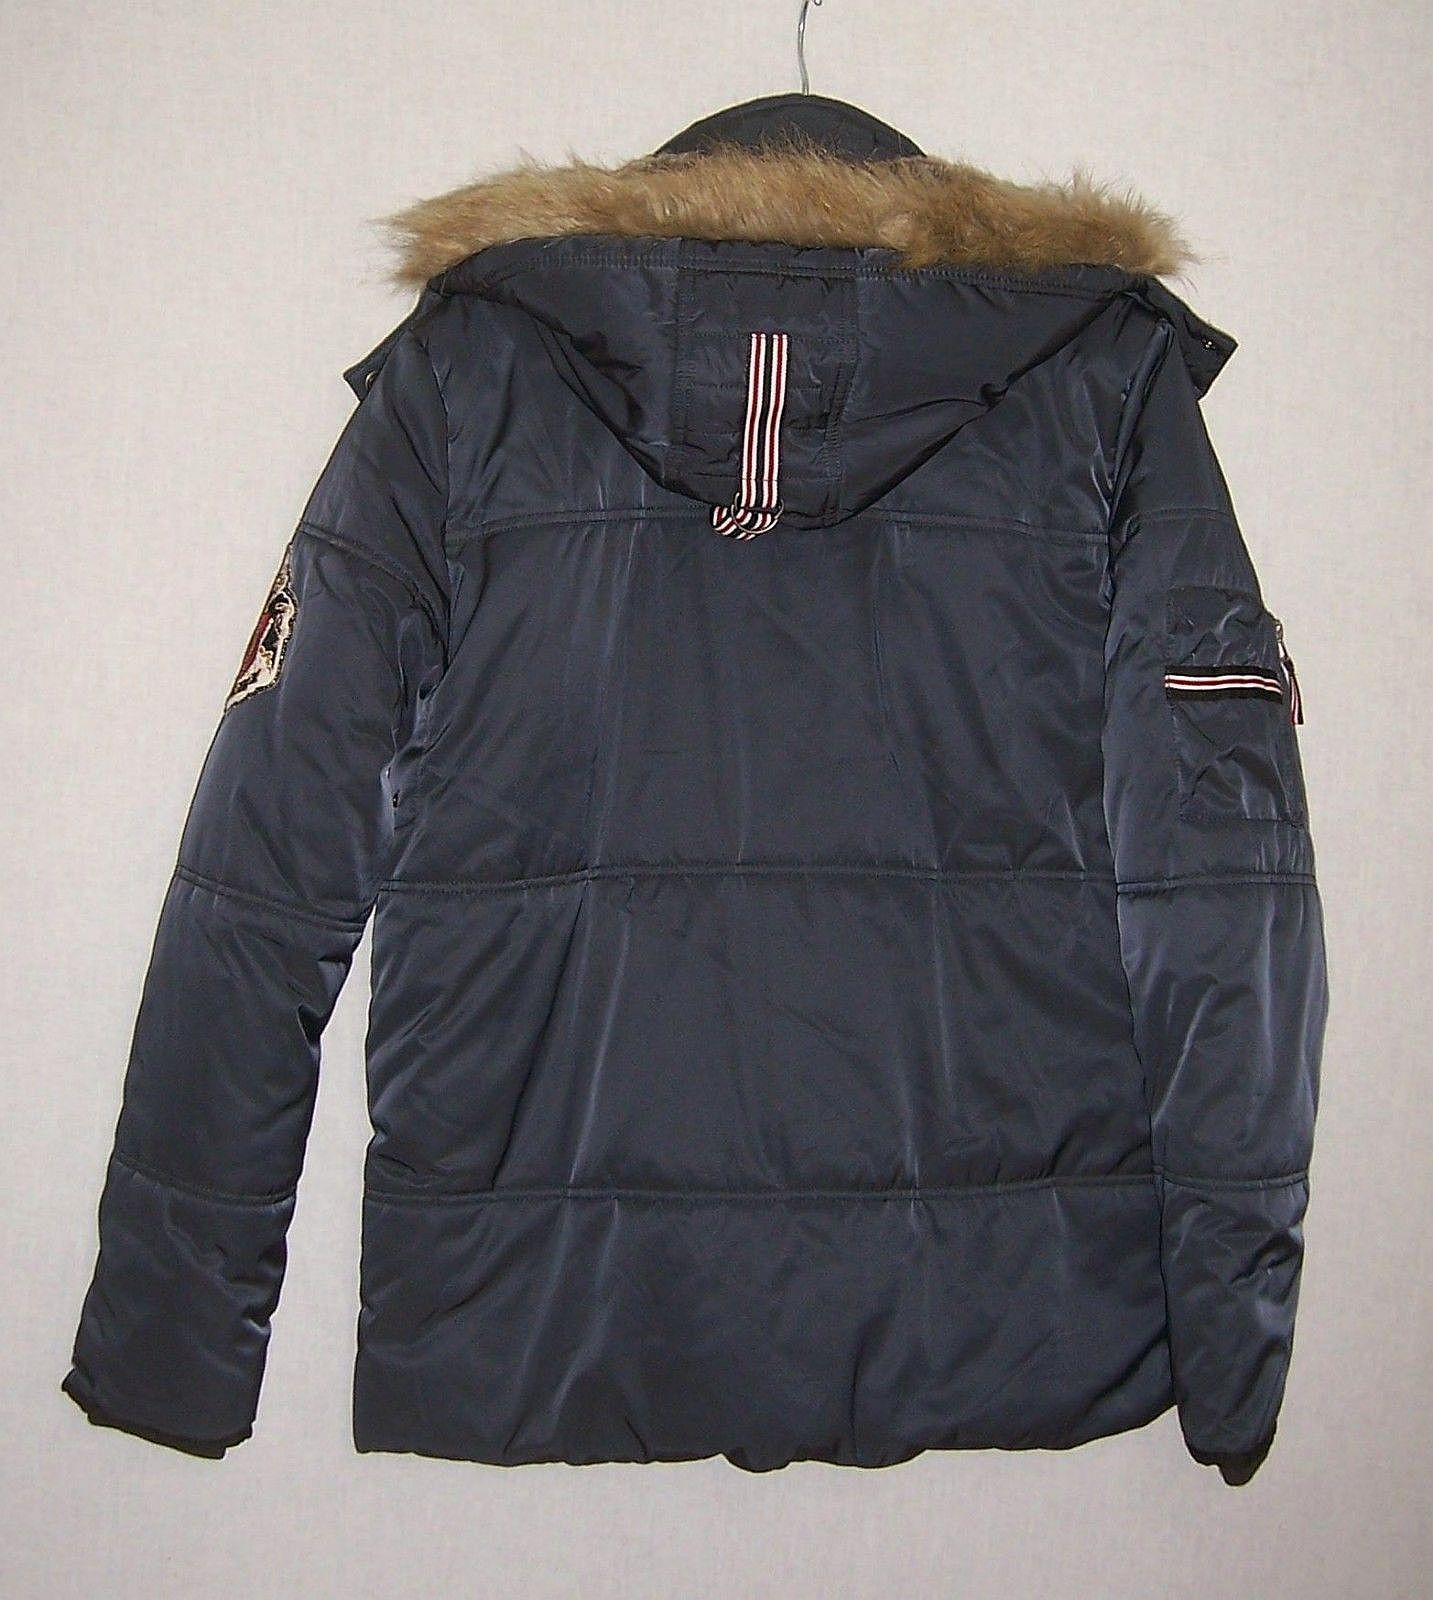 Warme Jacke / Winterjacke mit Kapuze von VINGINO in Größe 176 (16 J.) / grau